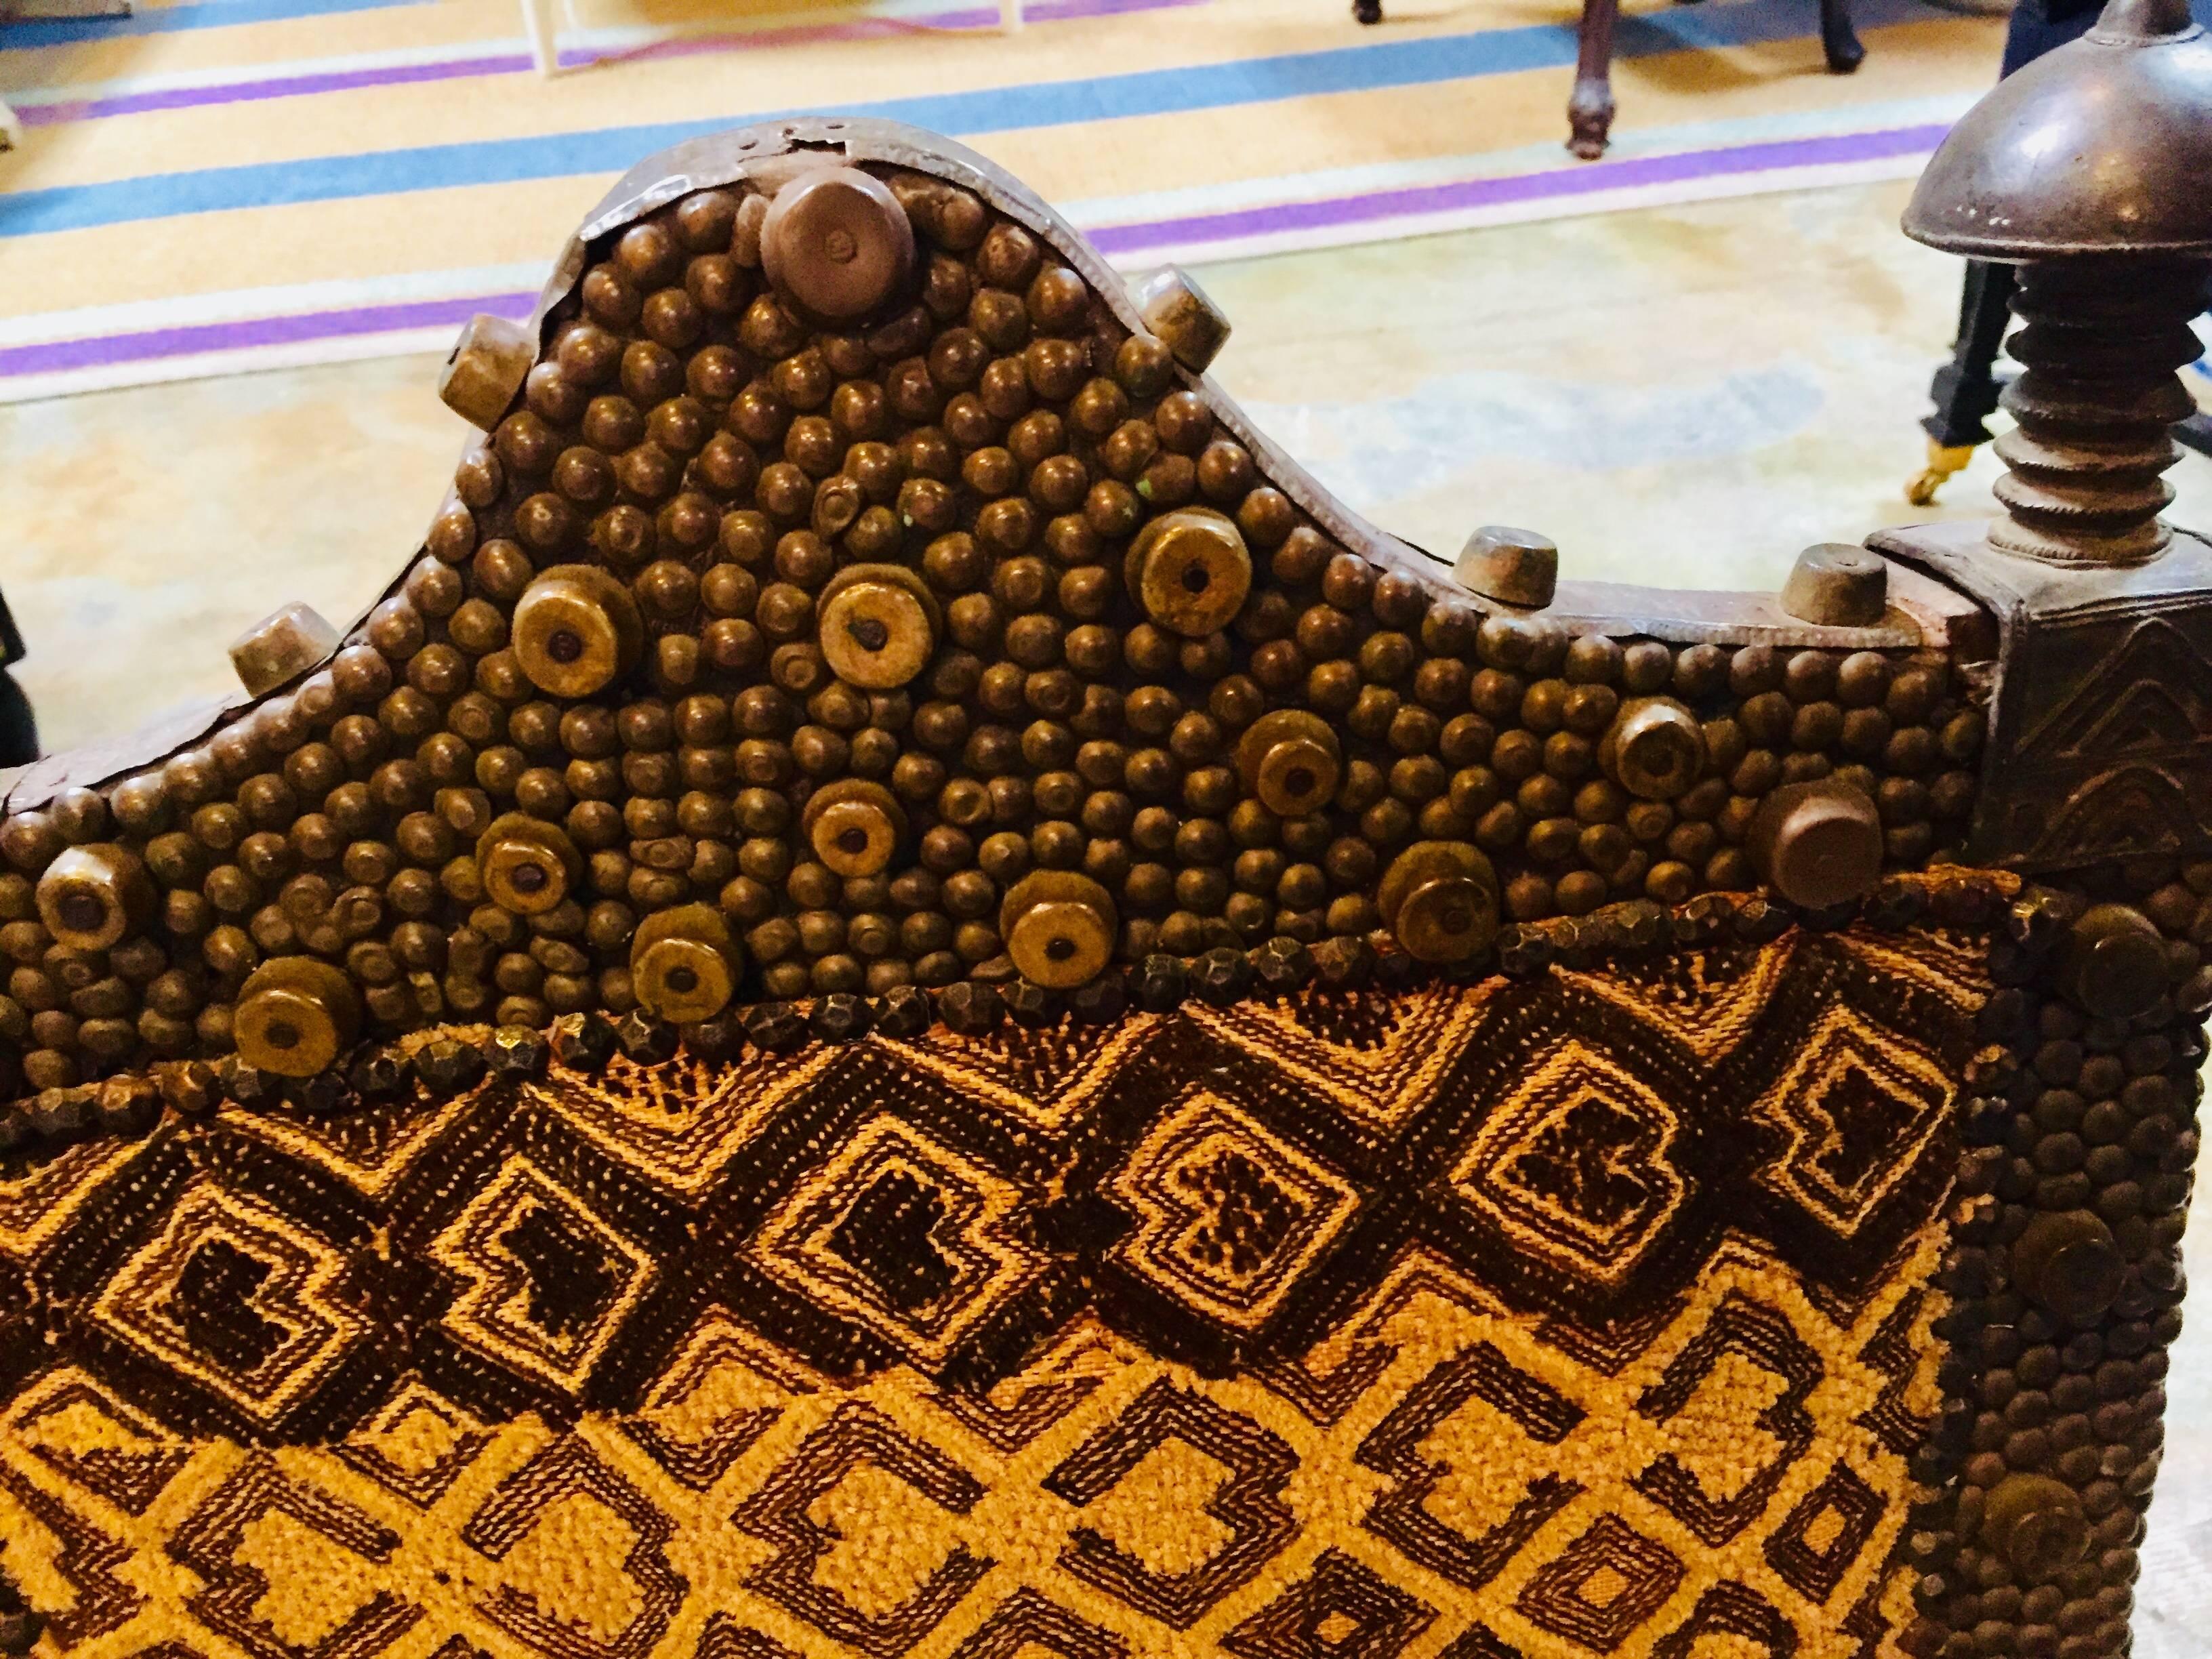 Exceptionnel fauteuil de roi datant d'environ 1860.
Travail du fer avec des pointes et des goujons de métier
Épis de faîtage en bronze
Textiles en tissu Kuba utilisés pour l'ameublement.